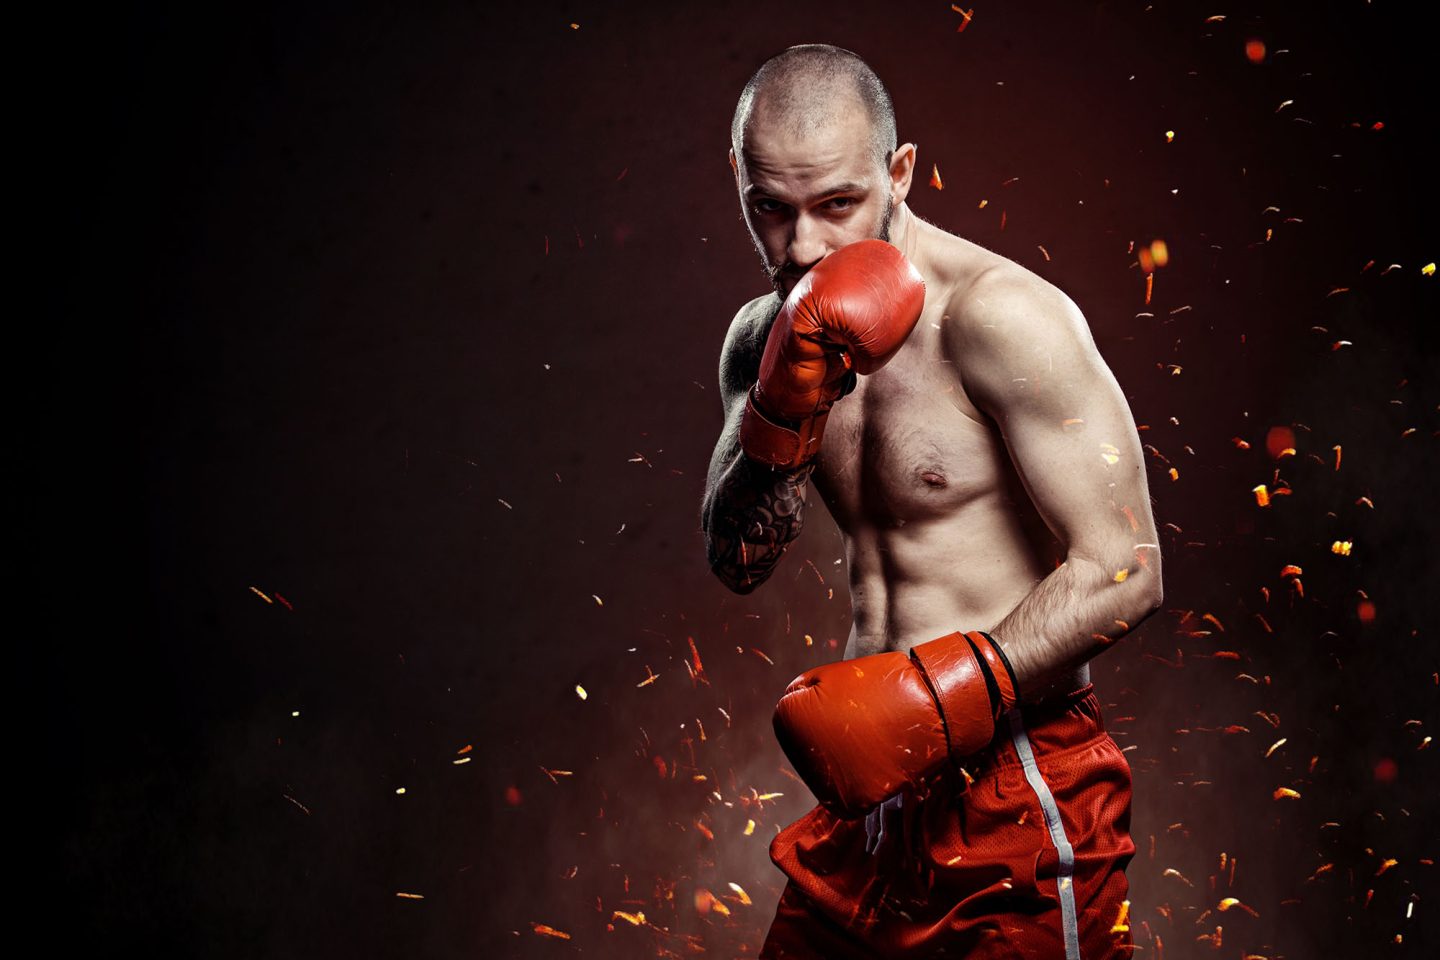 ボクシング ダッキングのやり方を解説 ポイントは股関節と重心移動